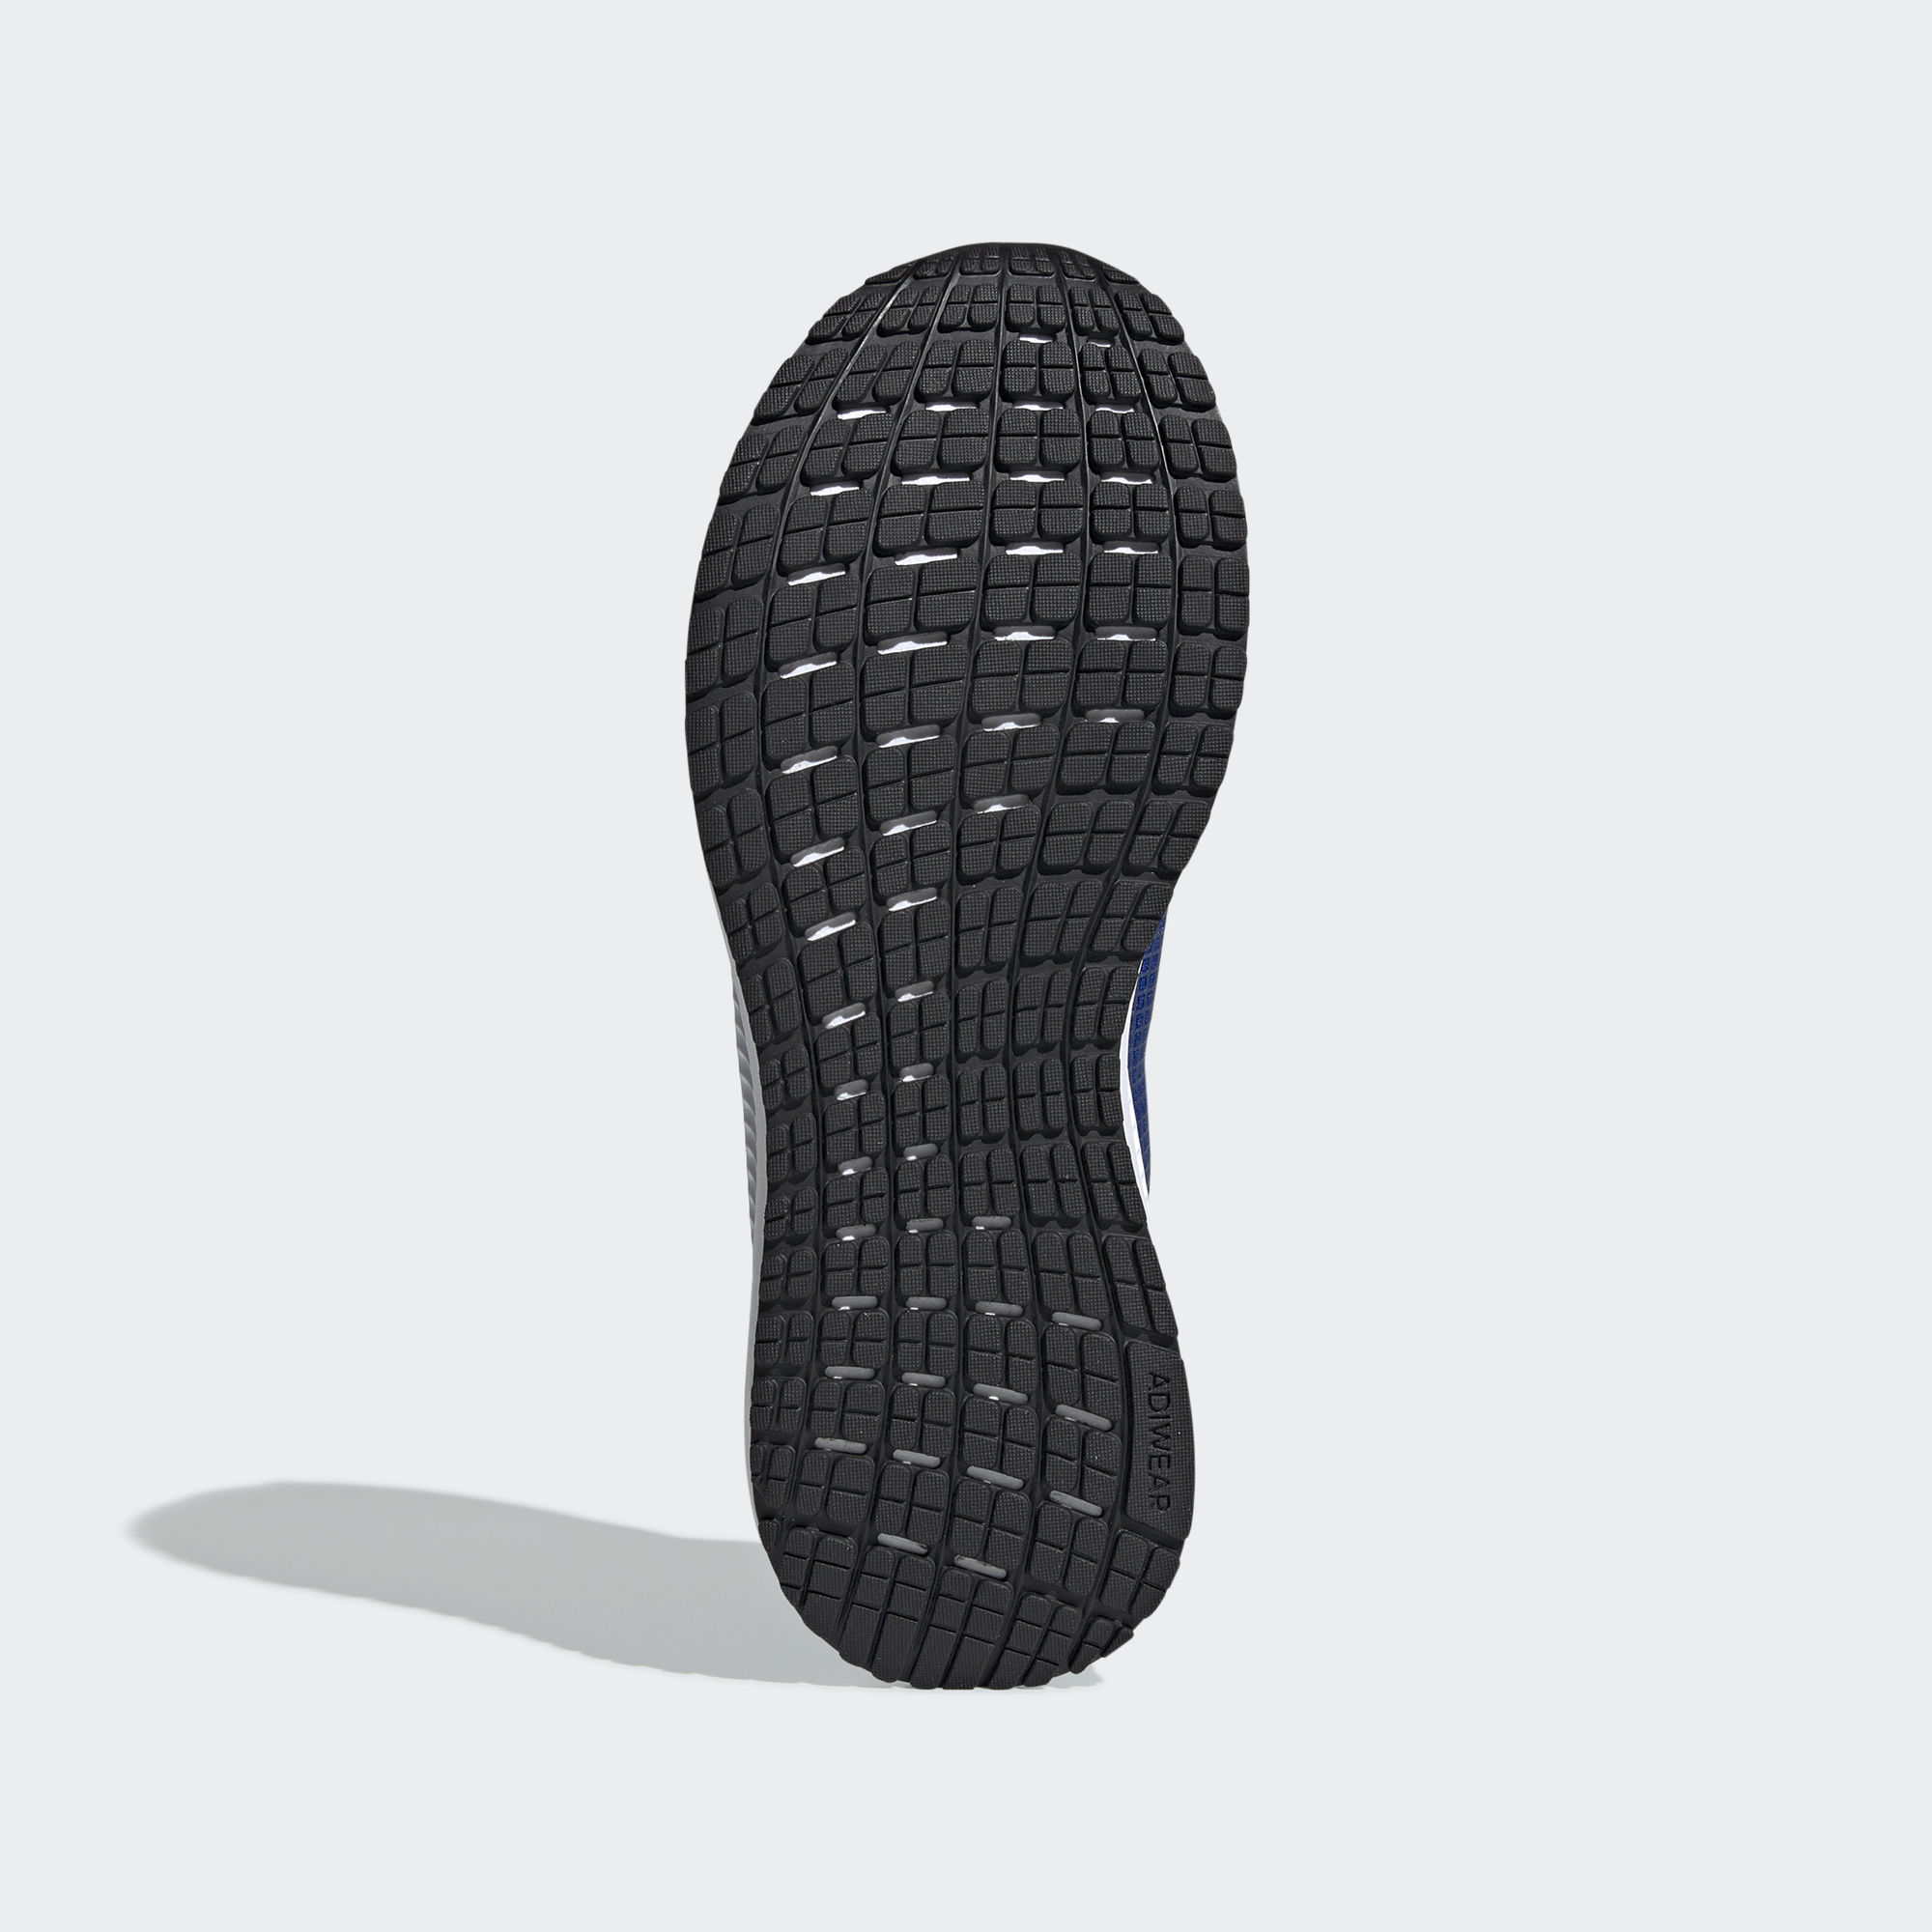 Becks clérigo Retencion SOLAR BLAZE 跑鞋- 藍色| 男子| adidas(愛迪達)香港官方網上商店